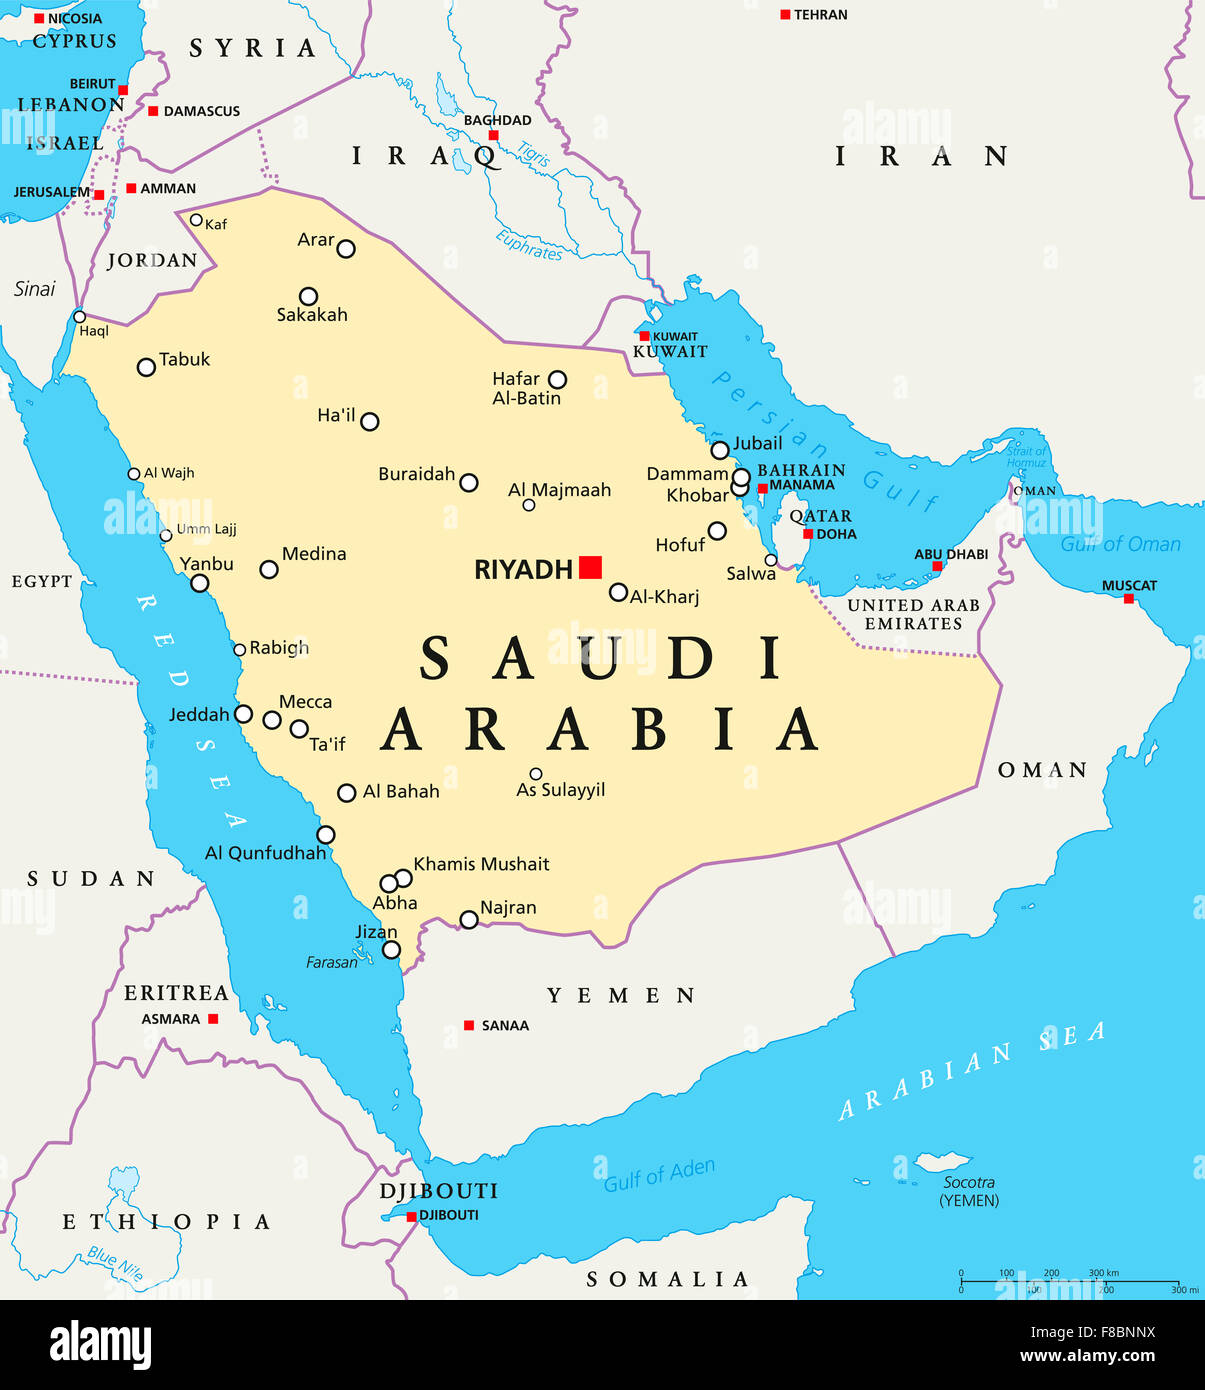 Arabia Saudita mappa politico con capitale Riyadh, i confini nazionali e importanti città. Etichetta inglese e la scala. Foto Stock